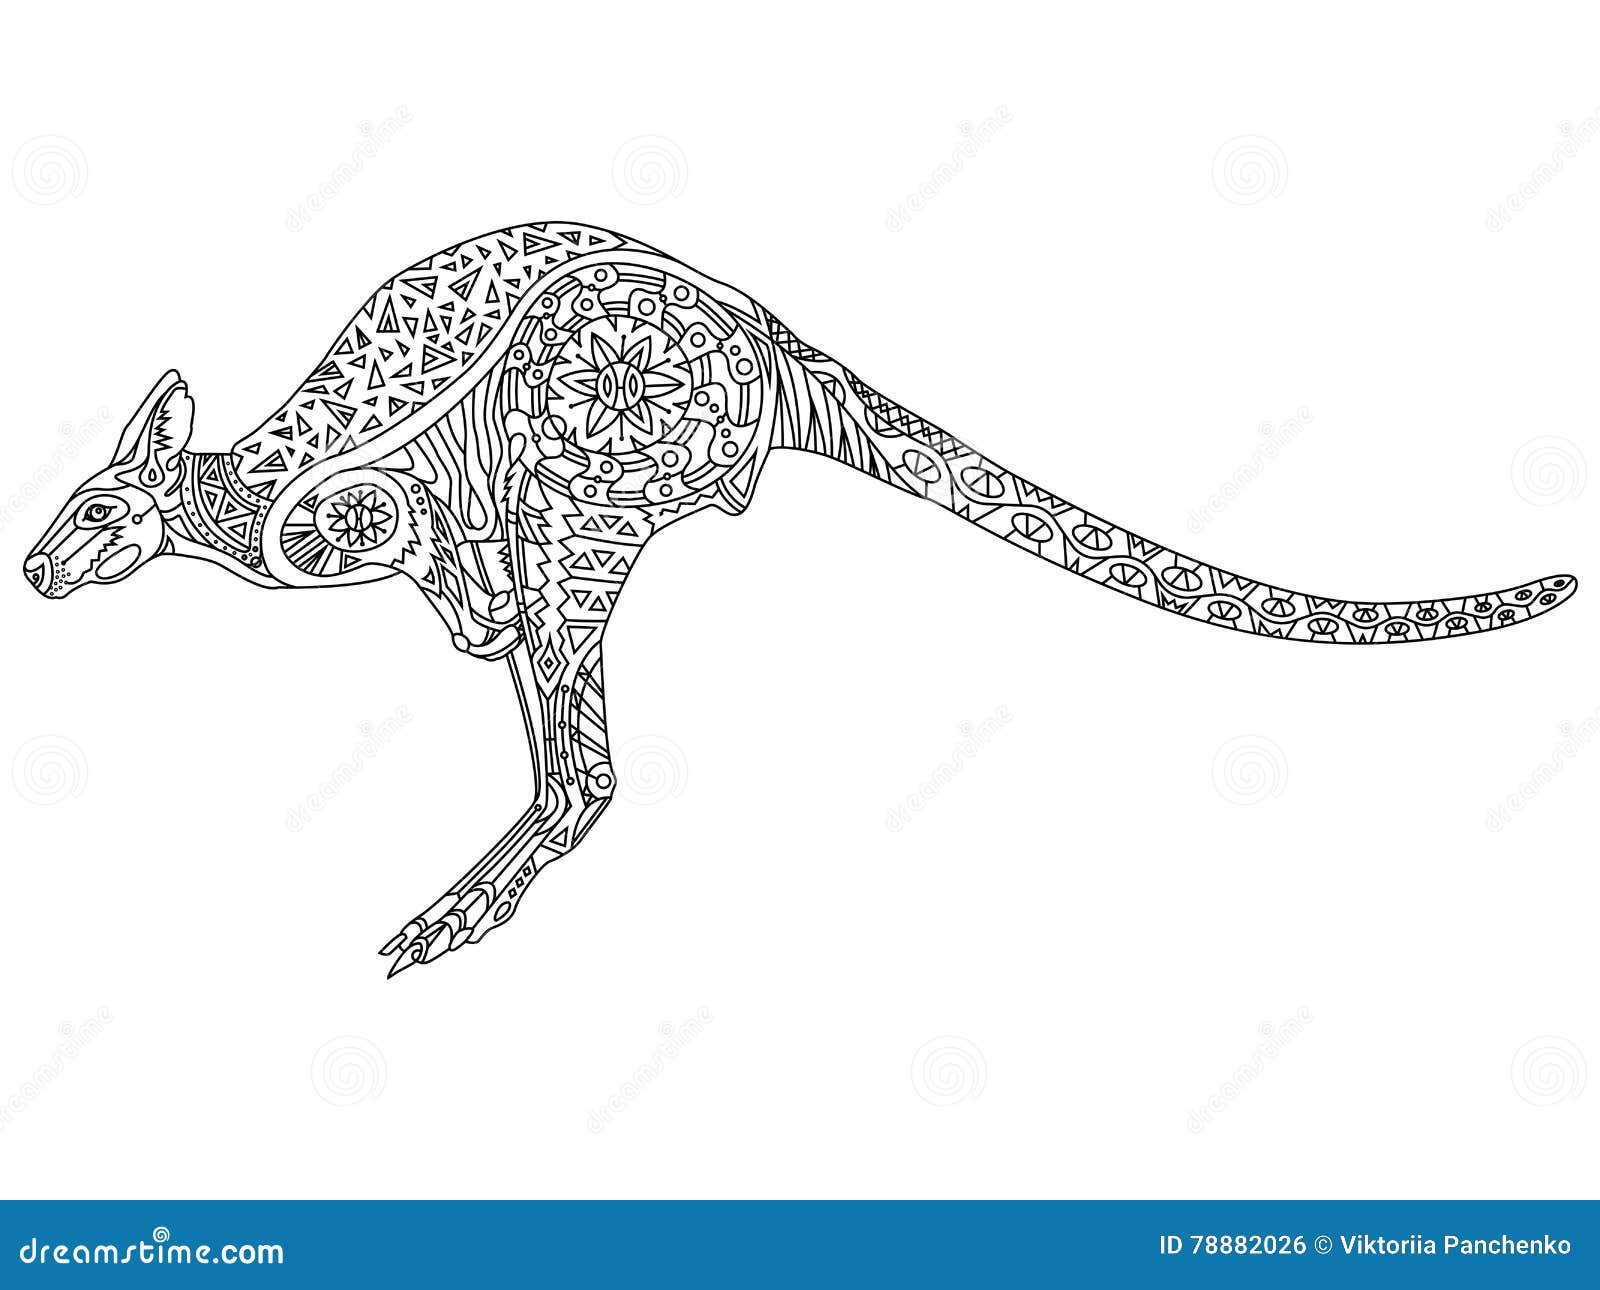 Download Zentangle Stylized Kangaroo Vector Illustration ...